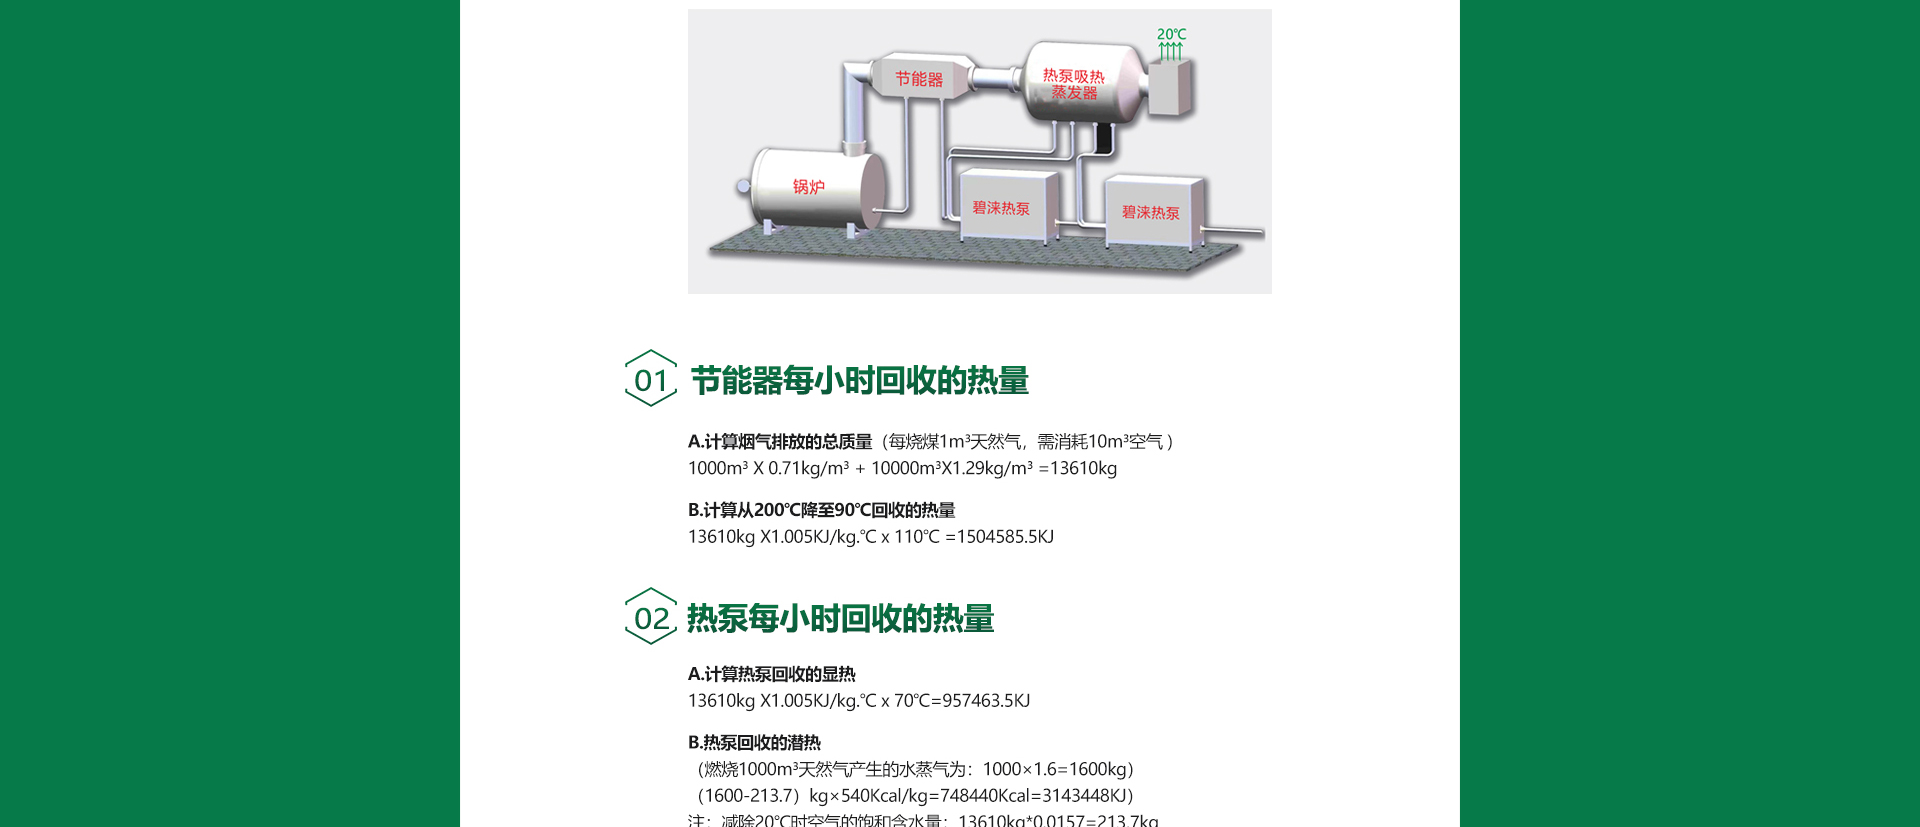 工业特种高温热泵应用